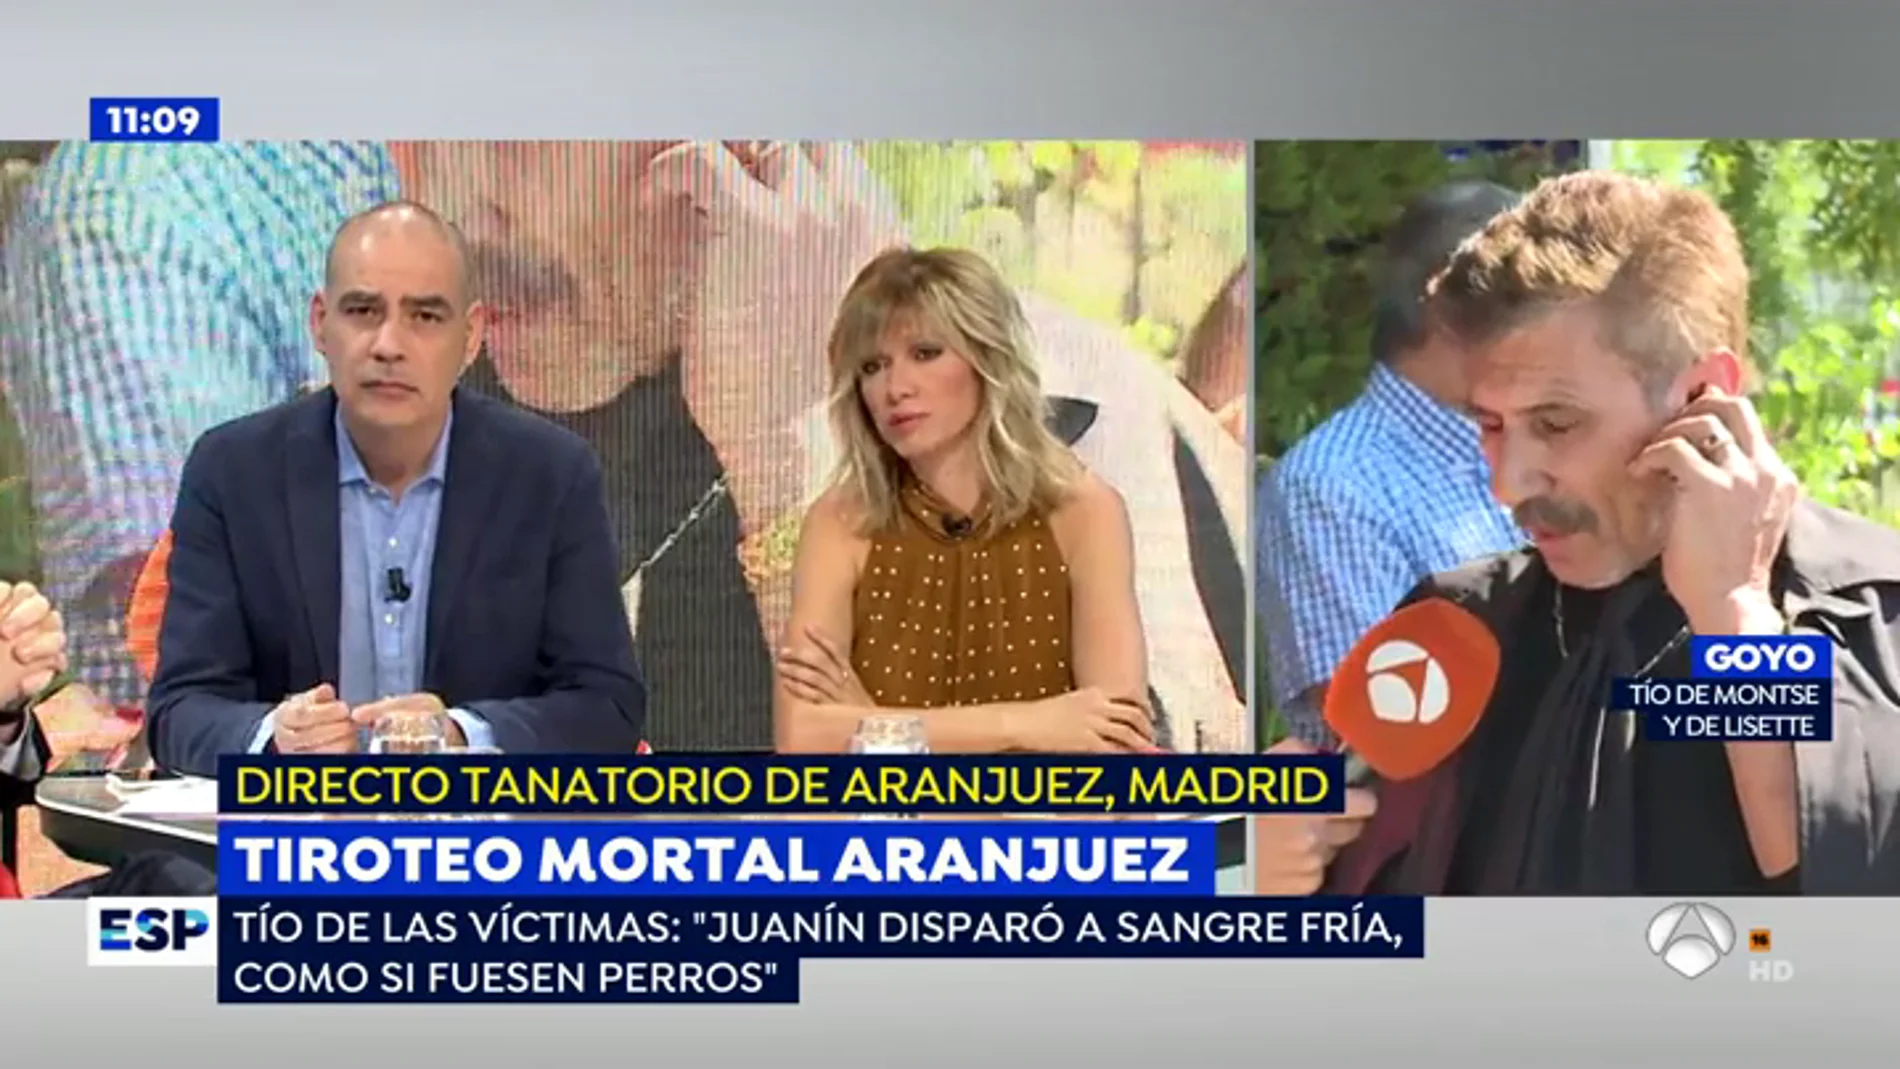 El patriarca de la familia de las dos mujeres tiroteadas en Aranjuez: "Disparó a sangre fría como un perro"